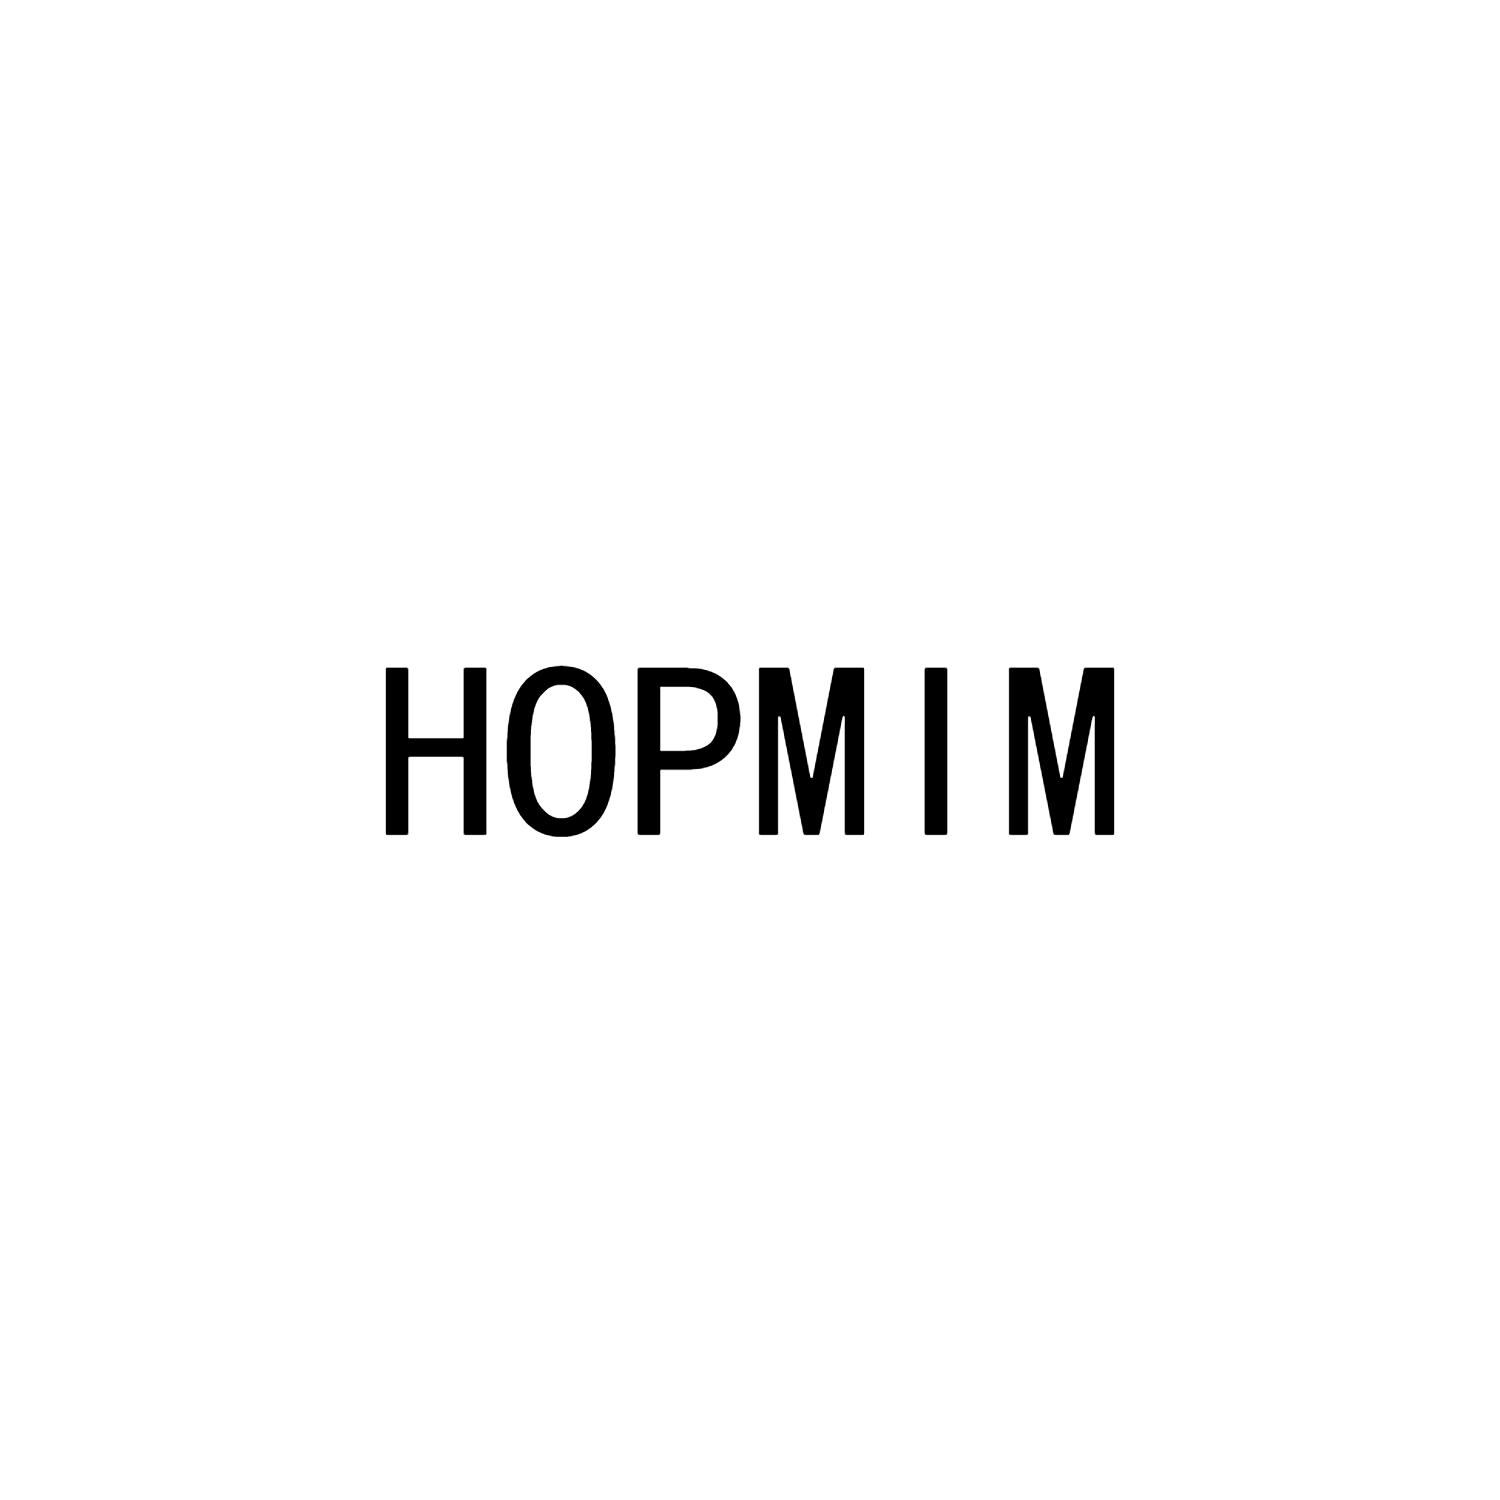 HOPMIM